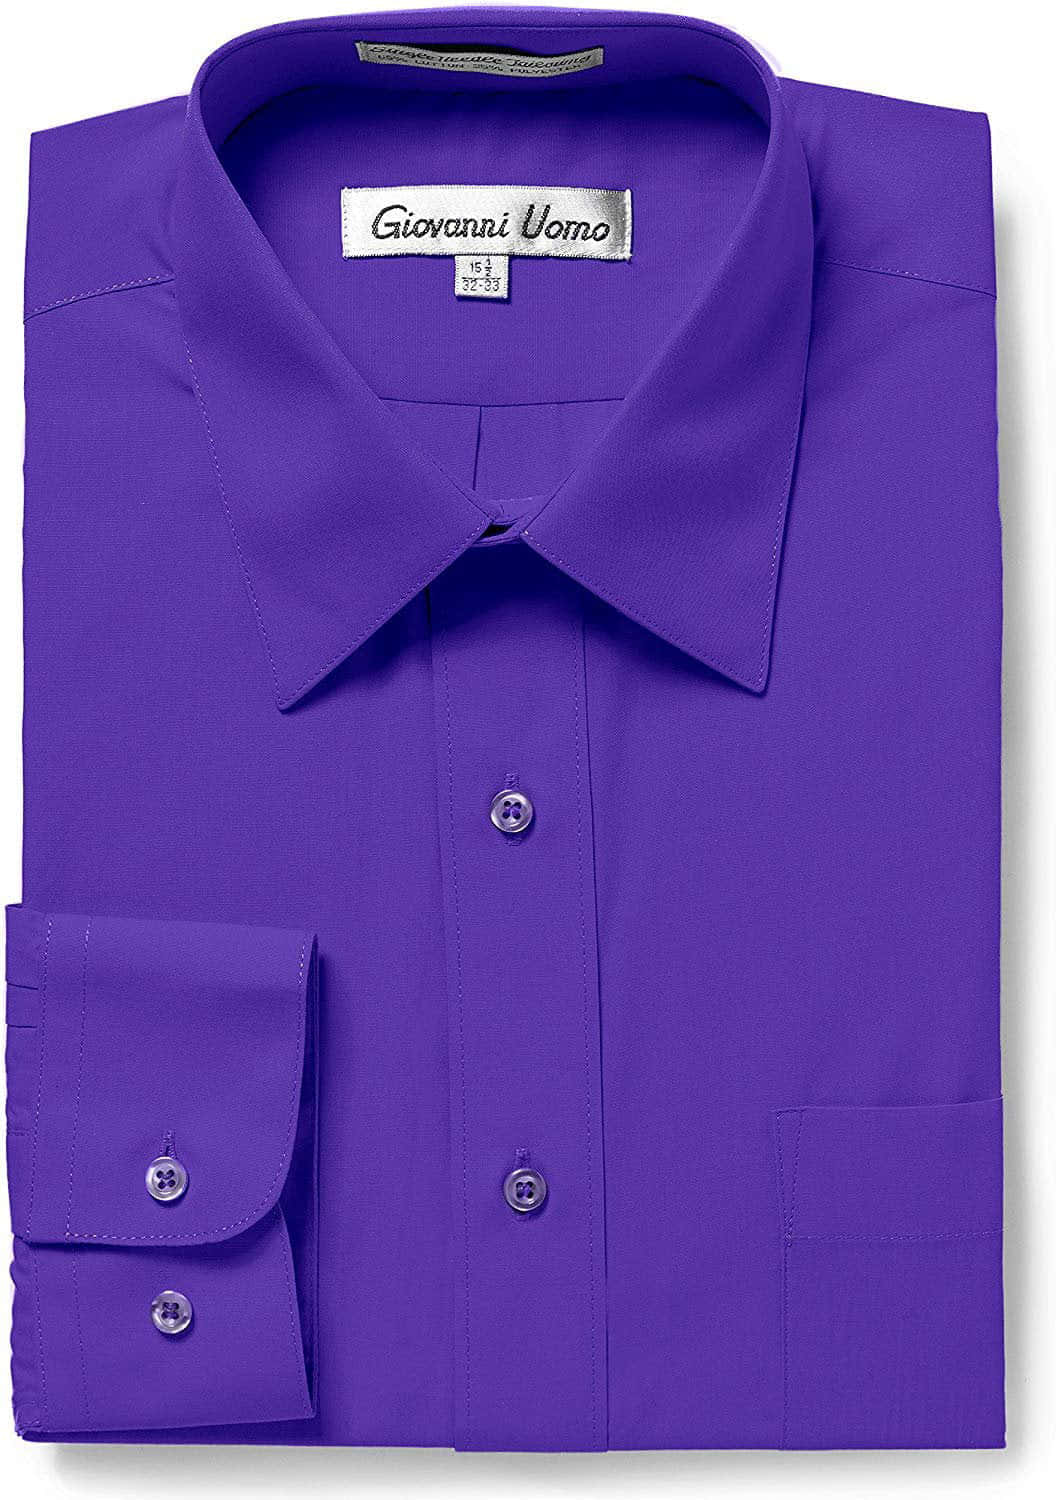 A stylish deep purple short-sleeved shirt with a modest but modern design. Wallpaper